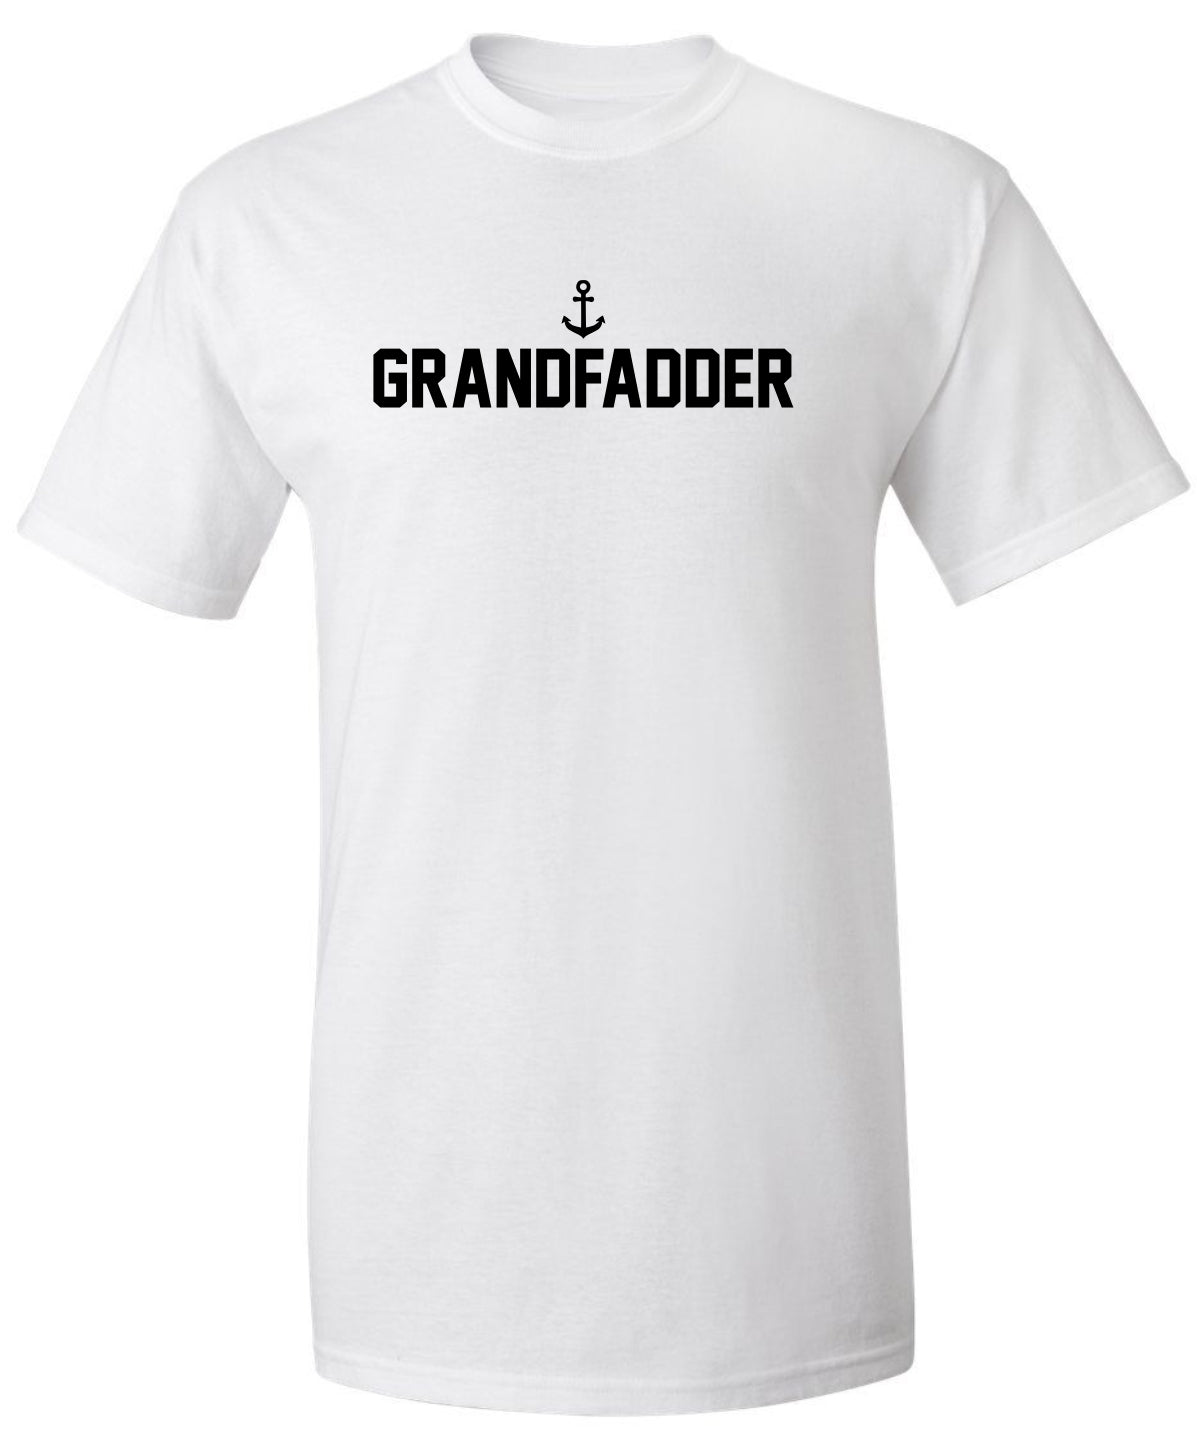 "Grandfadder" Unisex T-Shirt